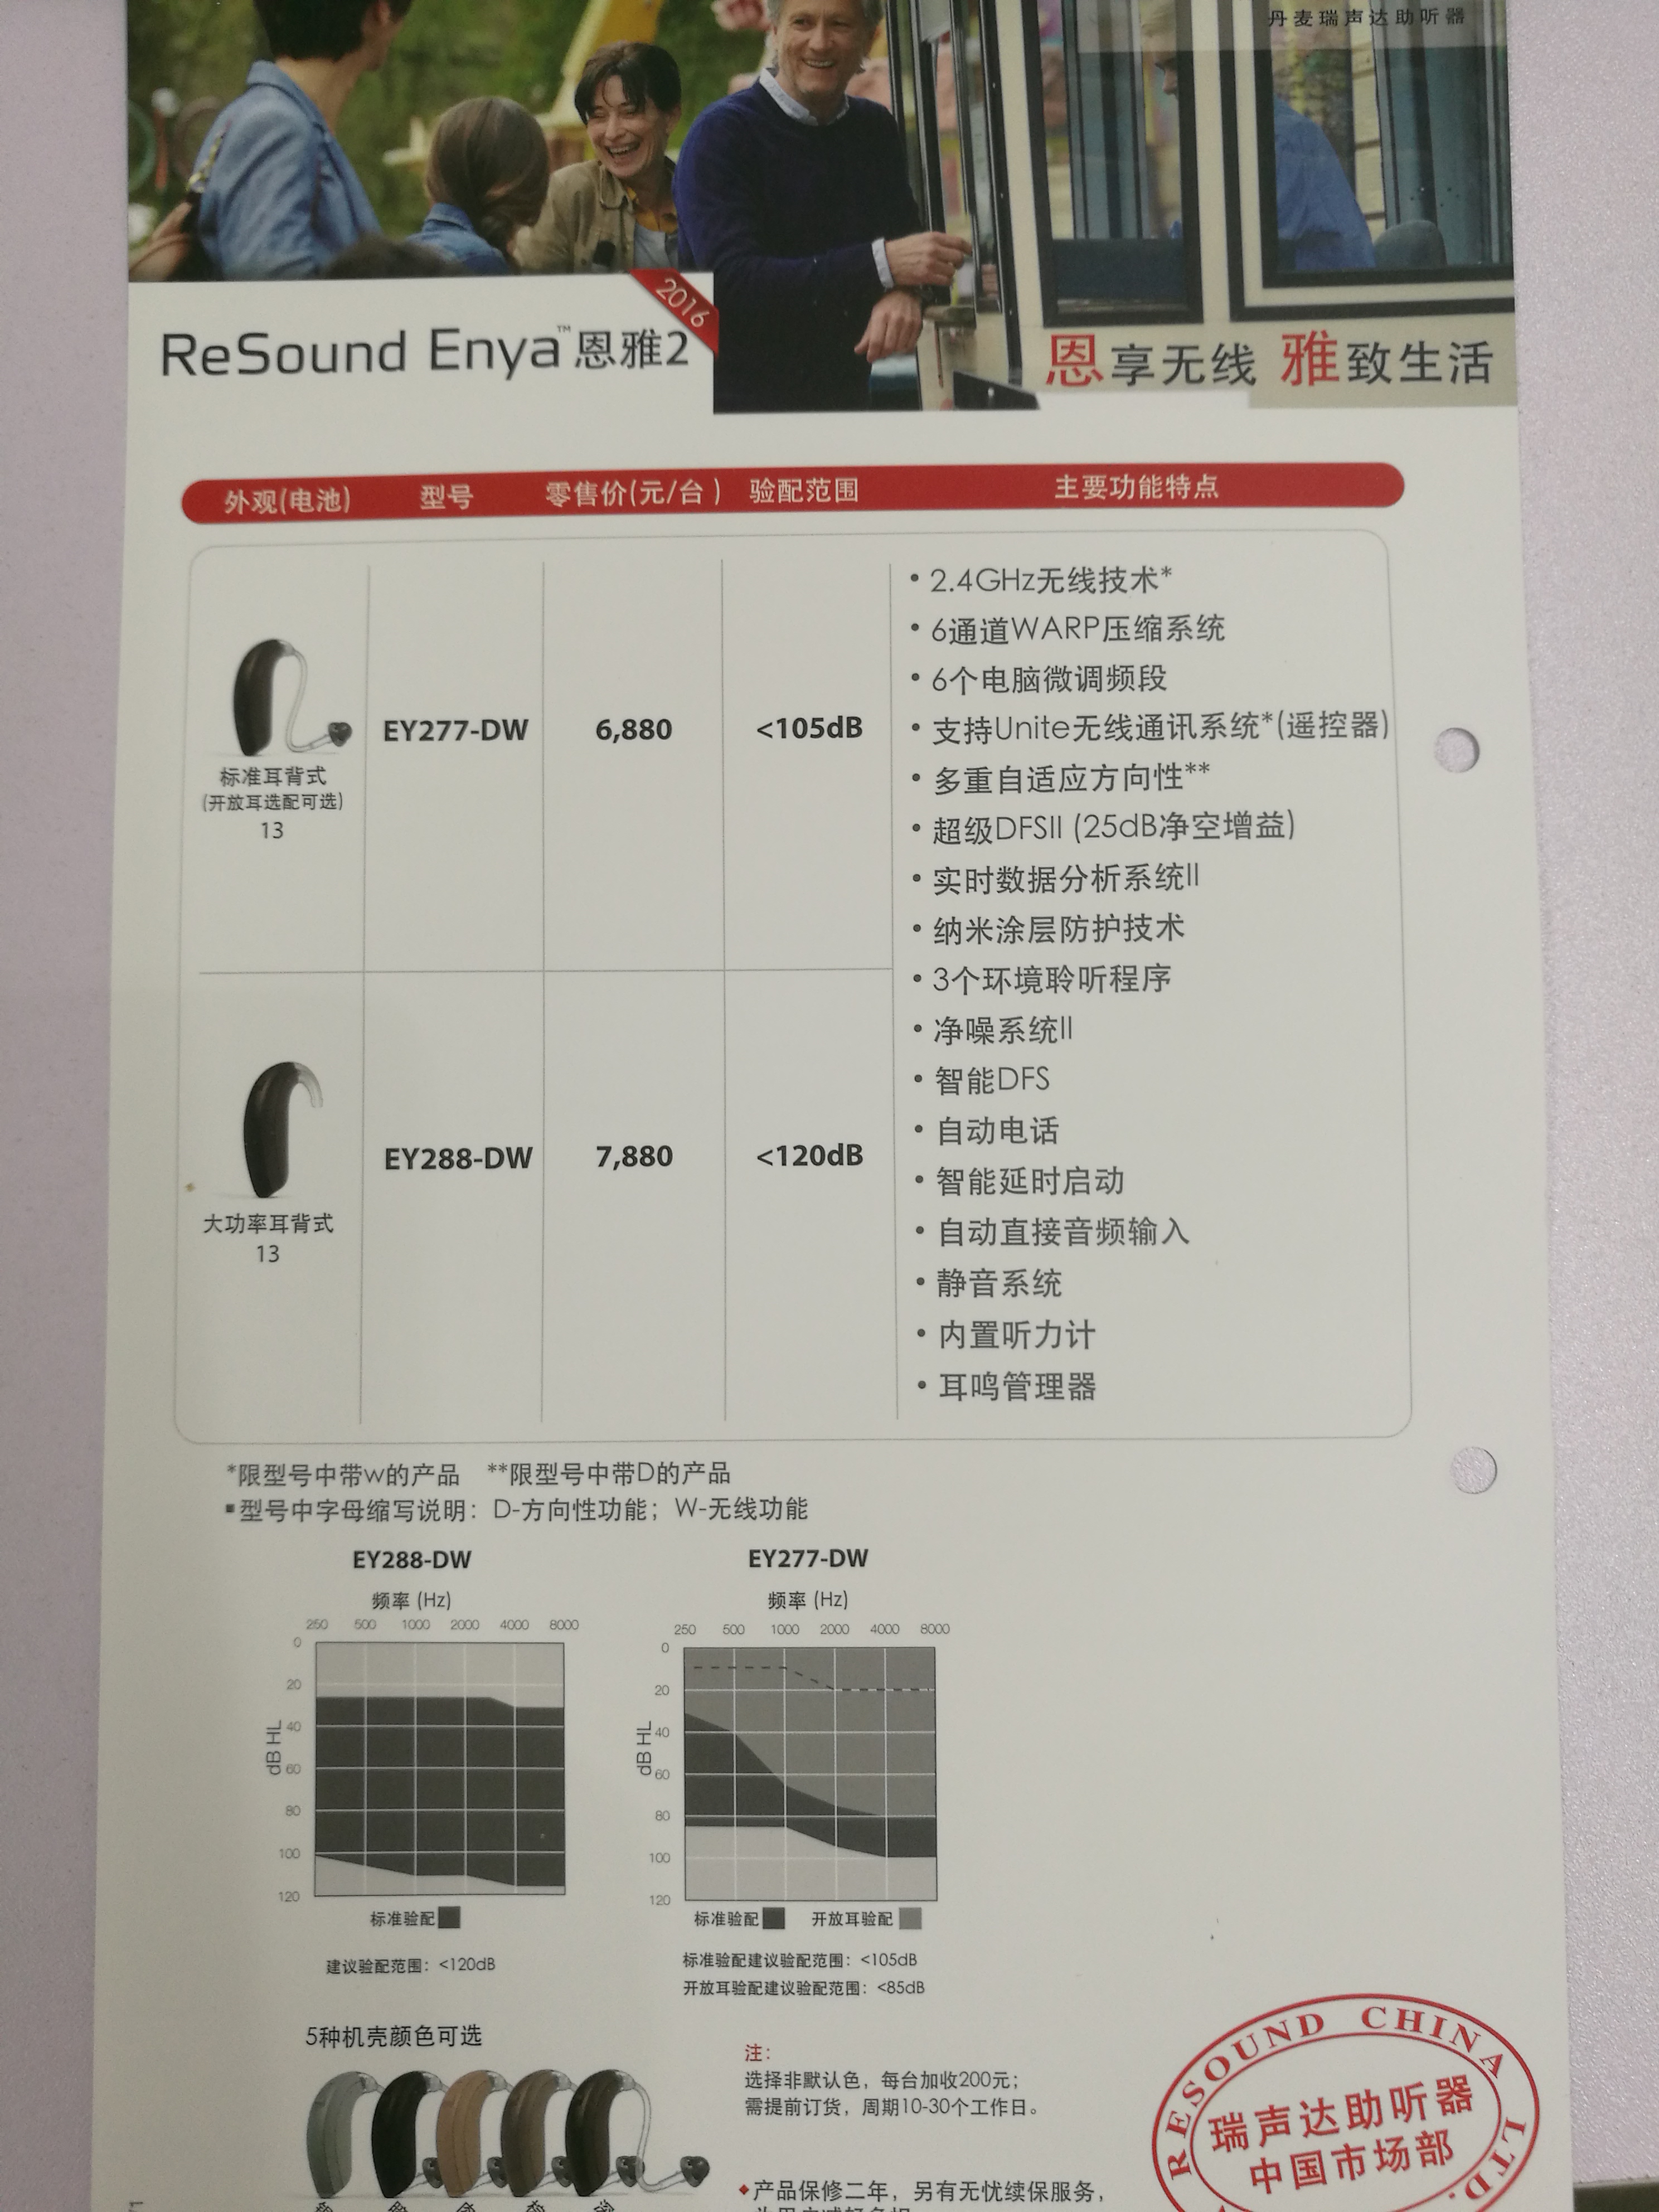 上海儿童瑞声达Enya恩雅2助听器折扣店